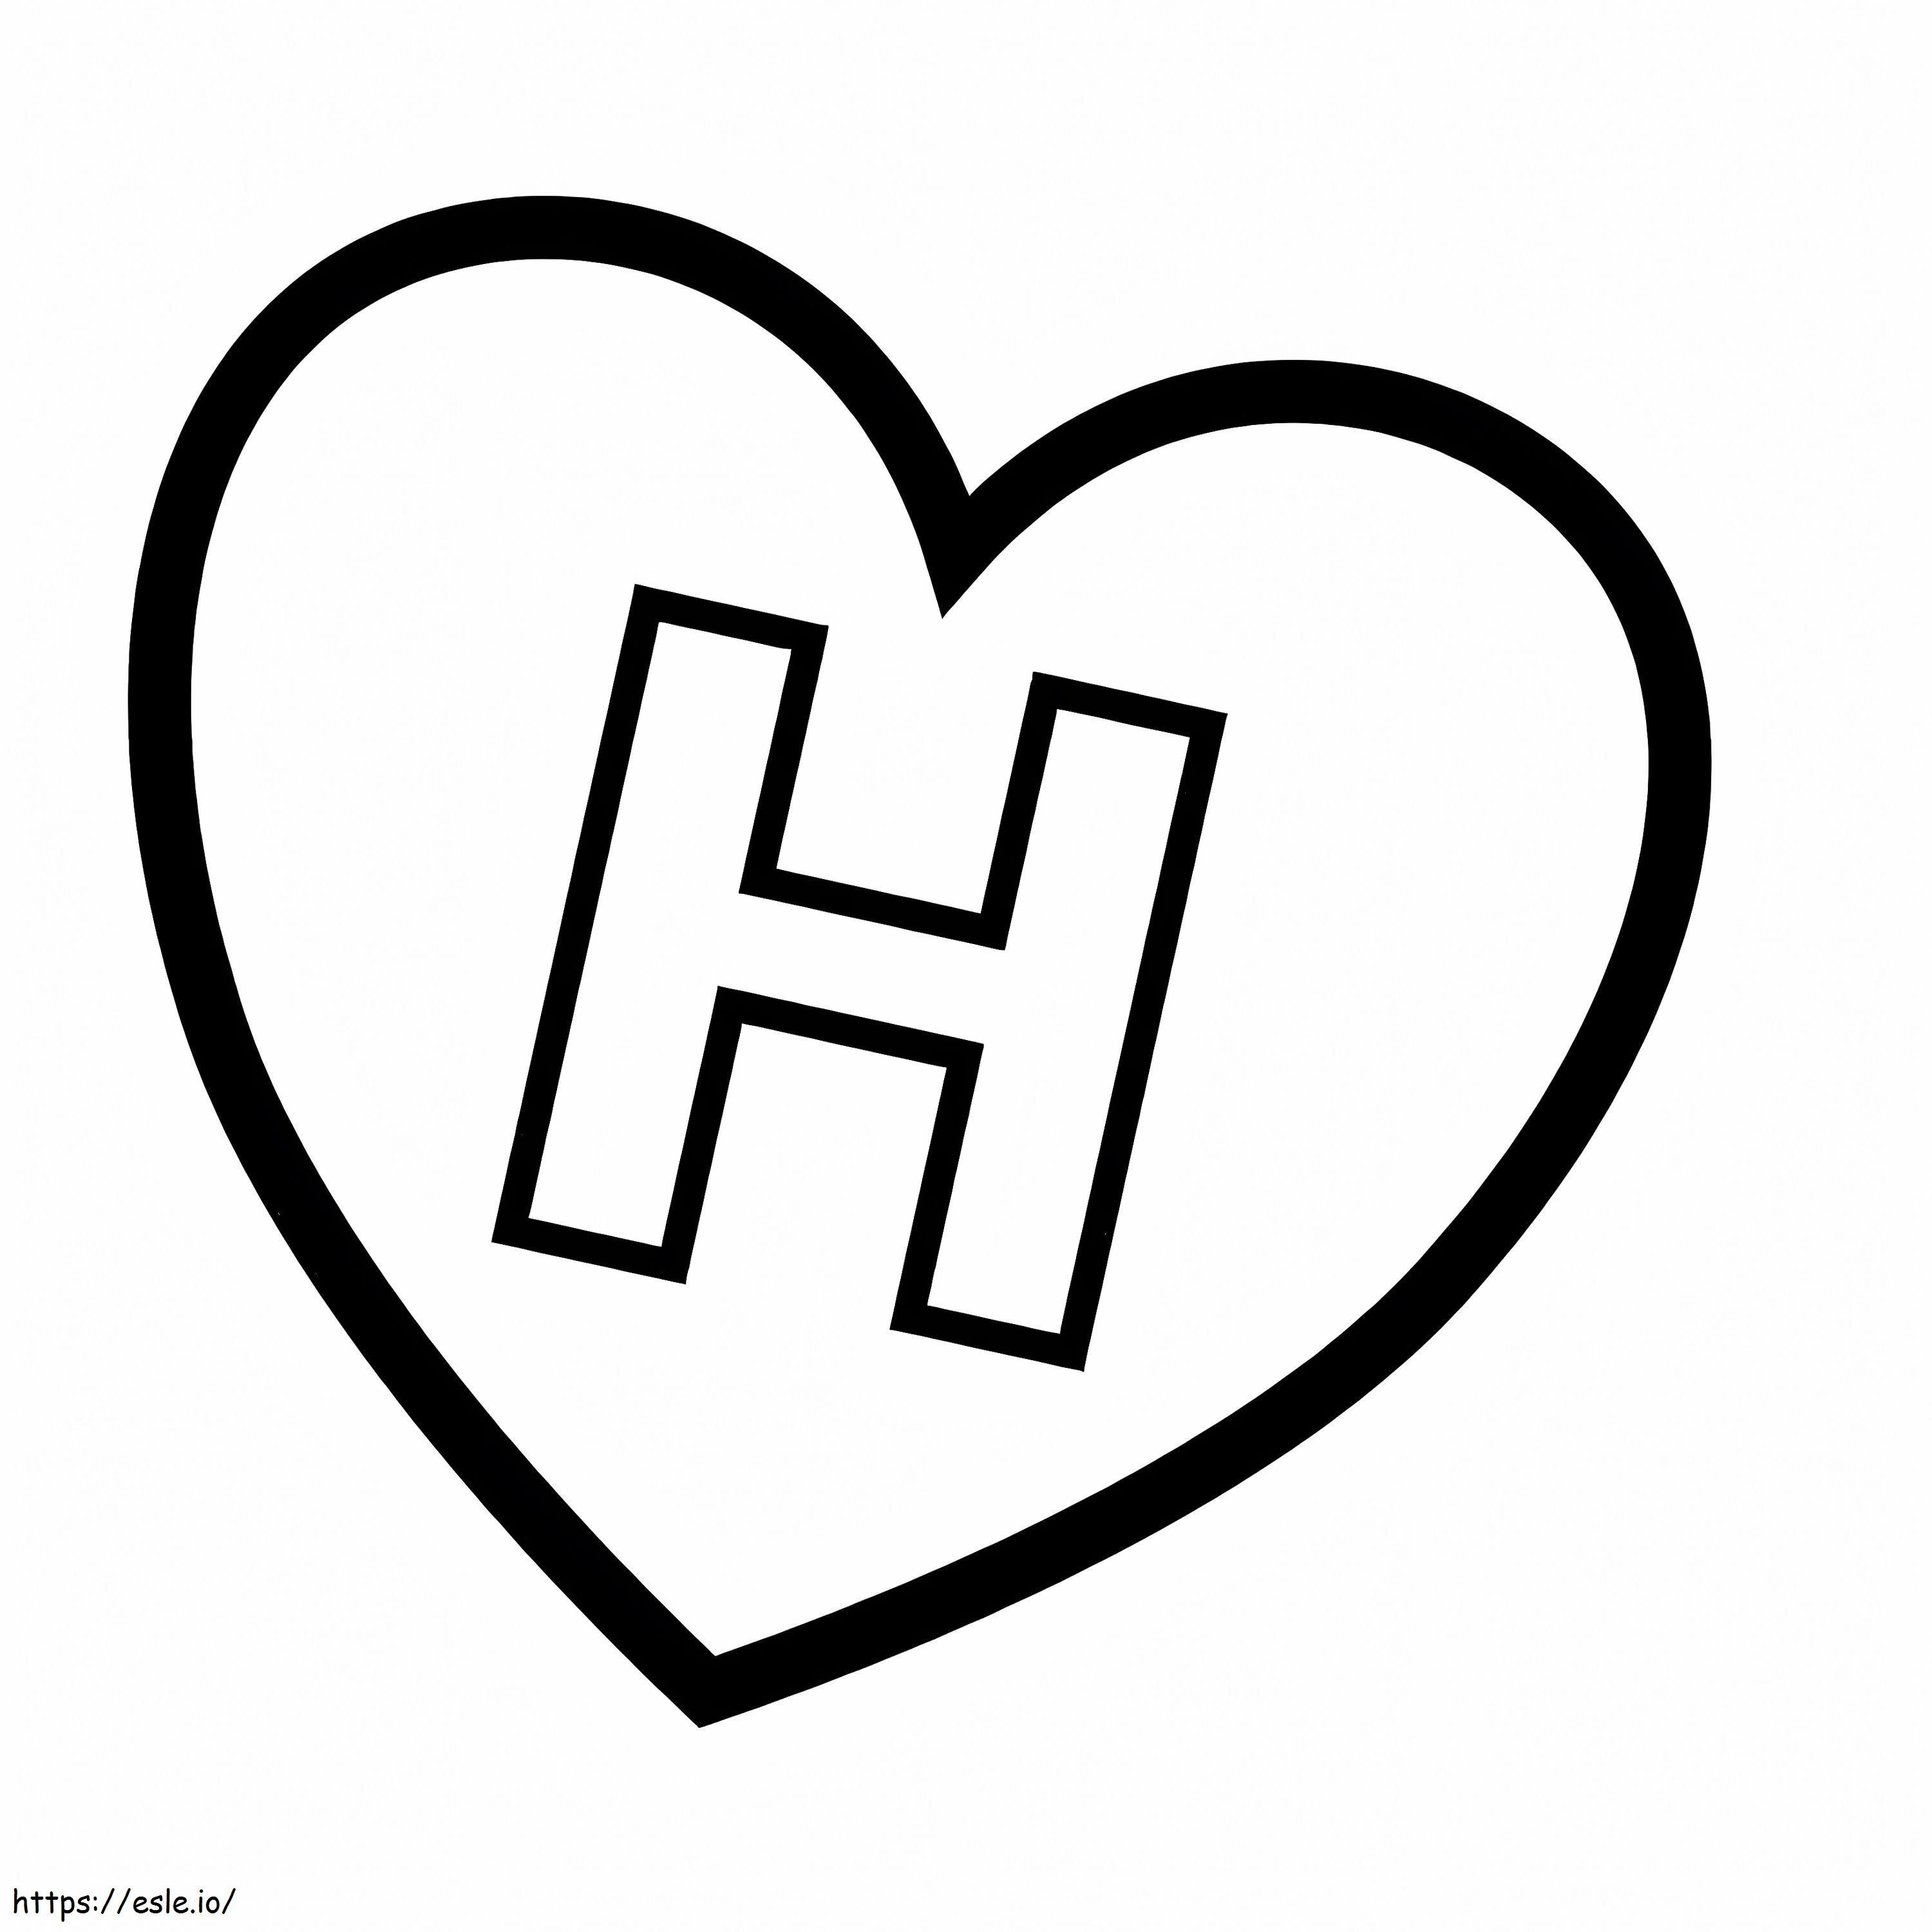 Letra H en corazón para colorear